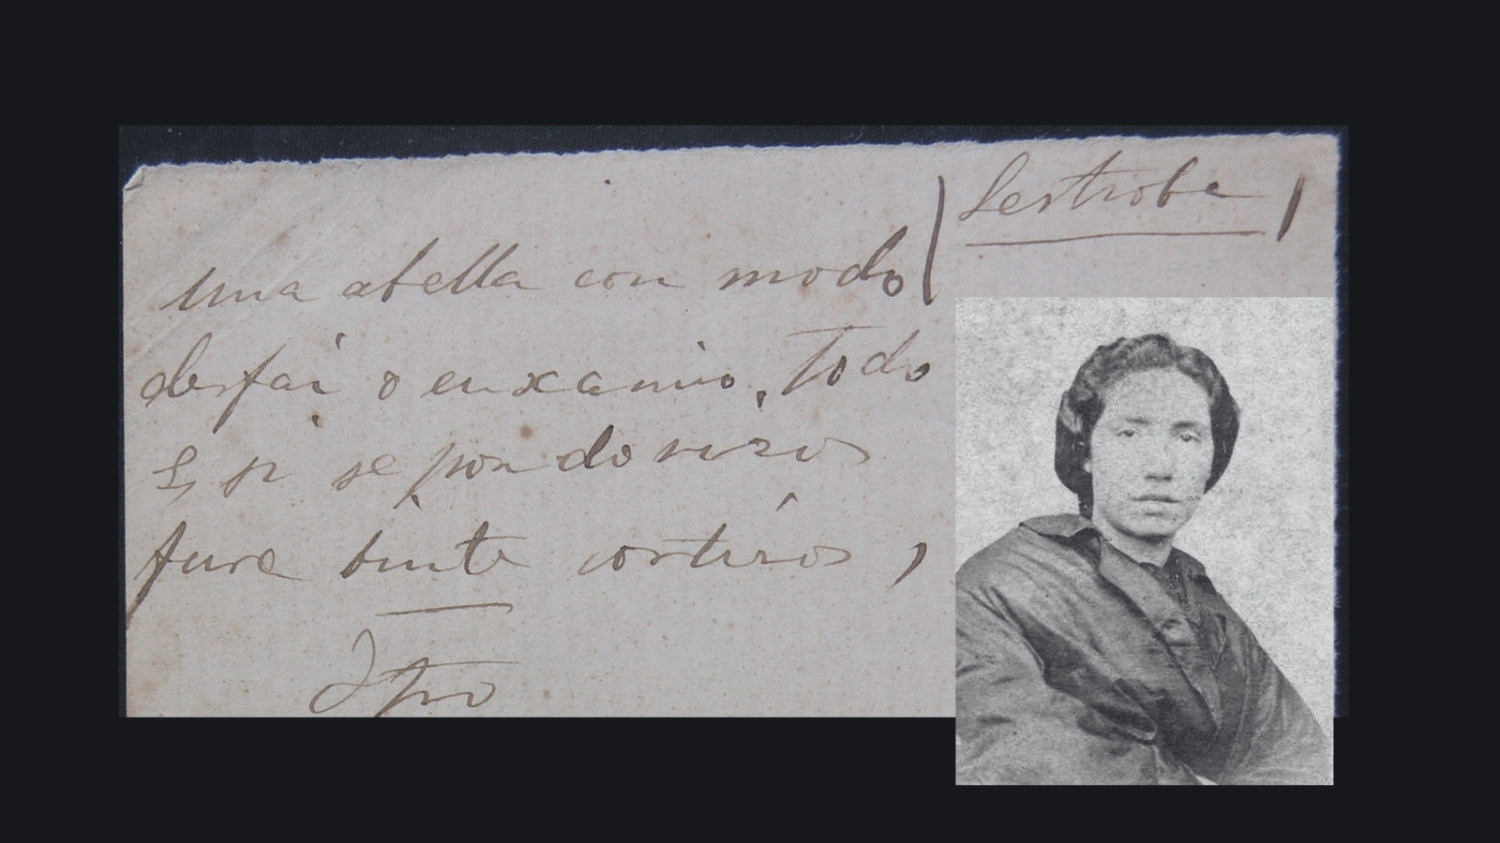 Catro cantares populares manuscritos por Rosalía de Castro